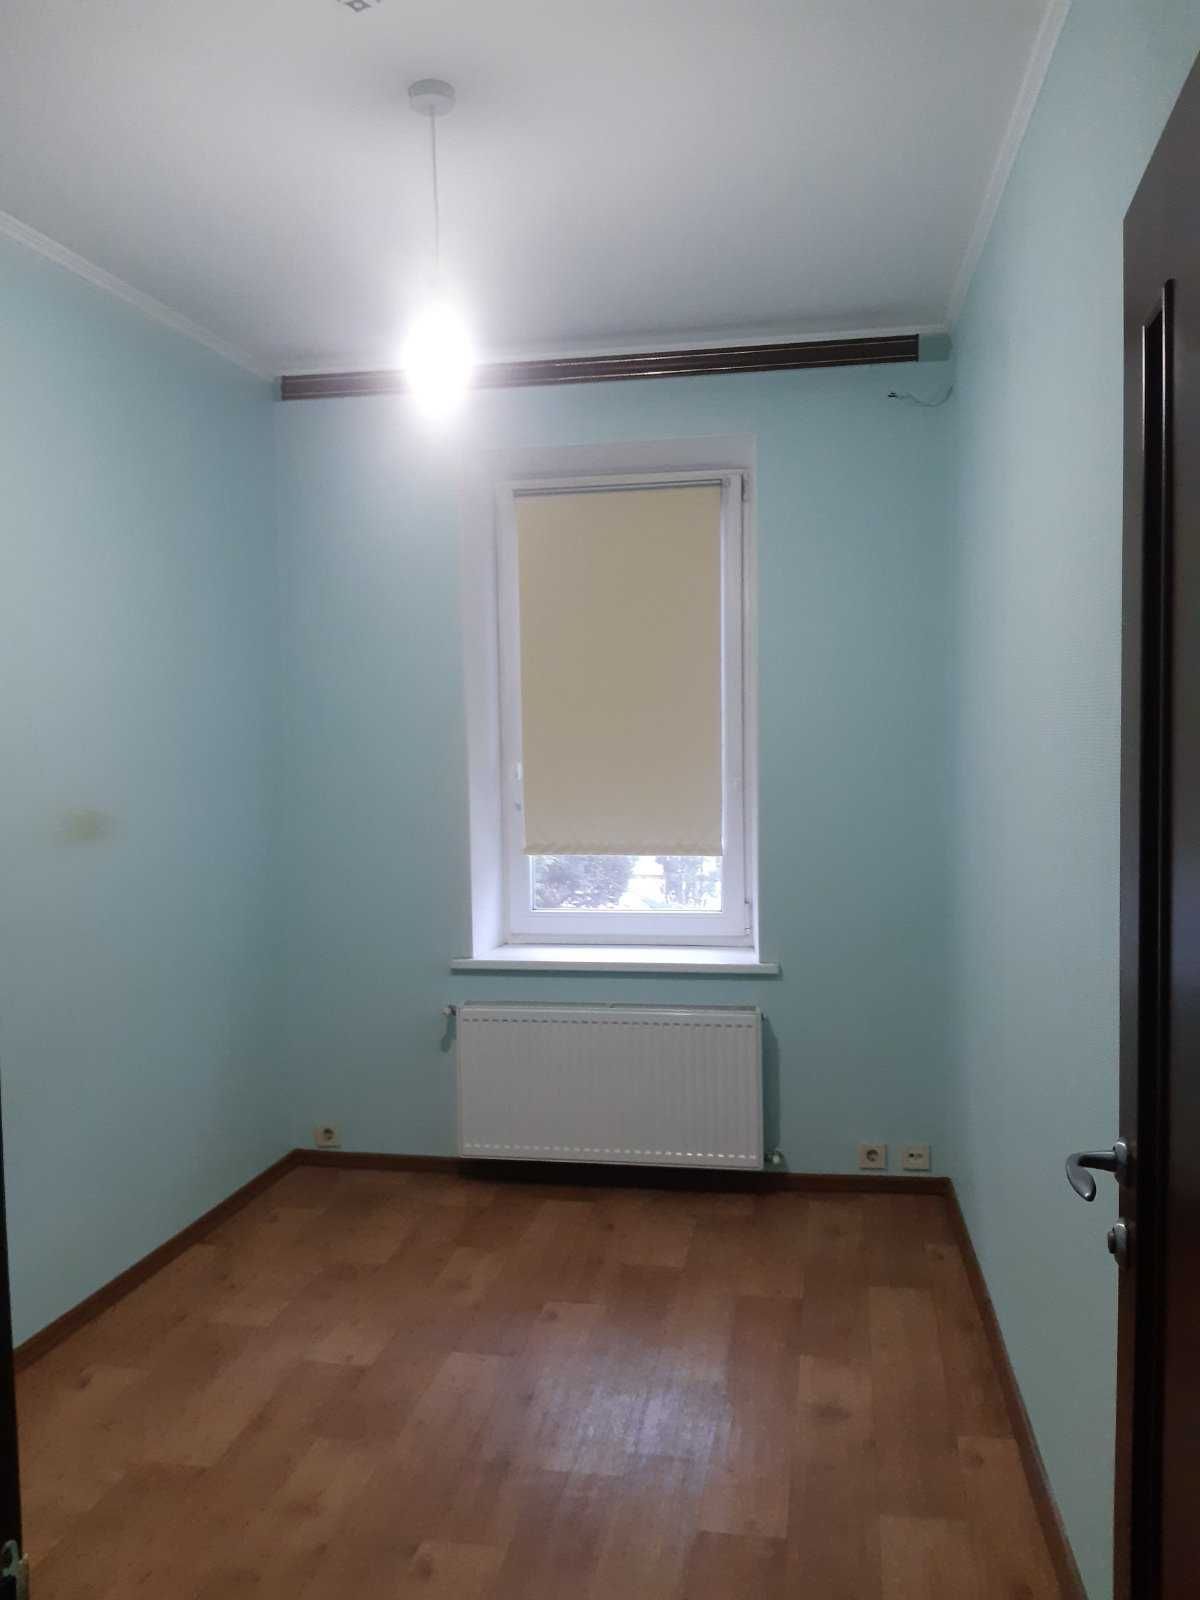 Продам свою 3-х комнатную квартиру р-н москалевки (ул. Киевская) Торг.